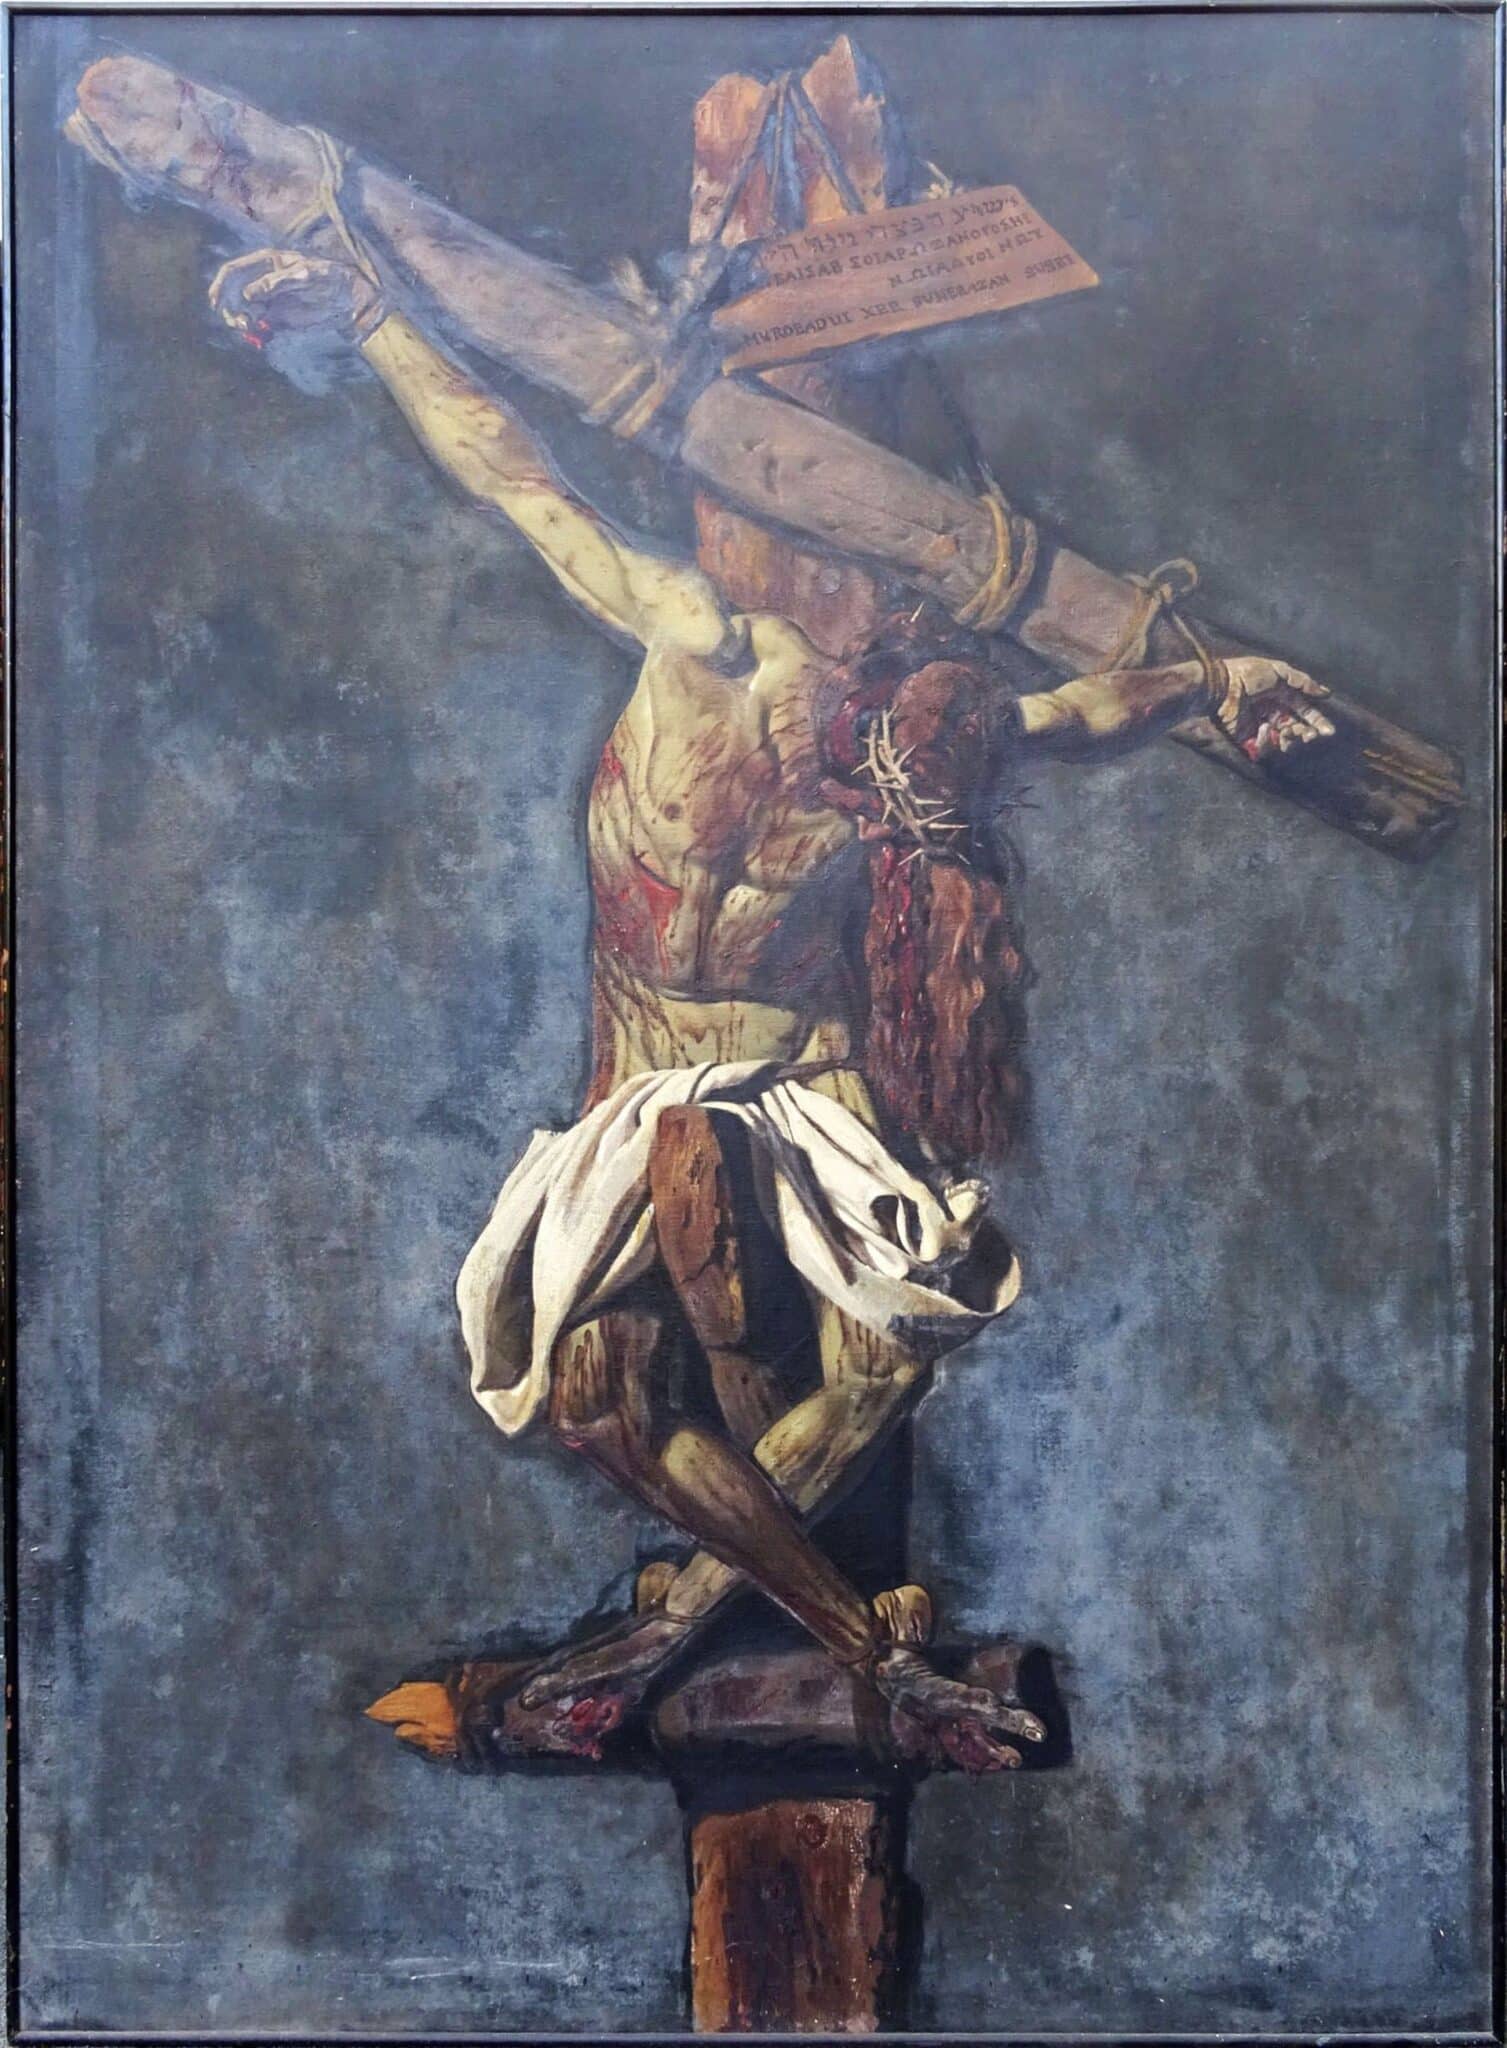 Sale a subasta la primera de las cuatro versiones del Cristo crucificado que pintó Prieto Coussent